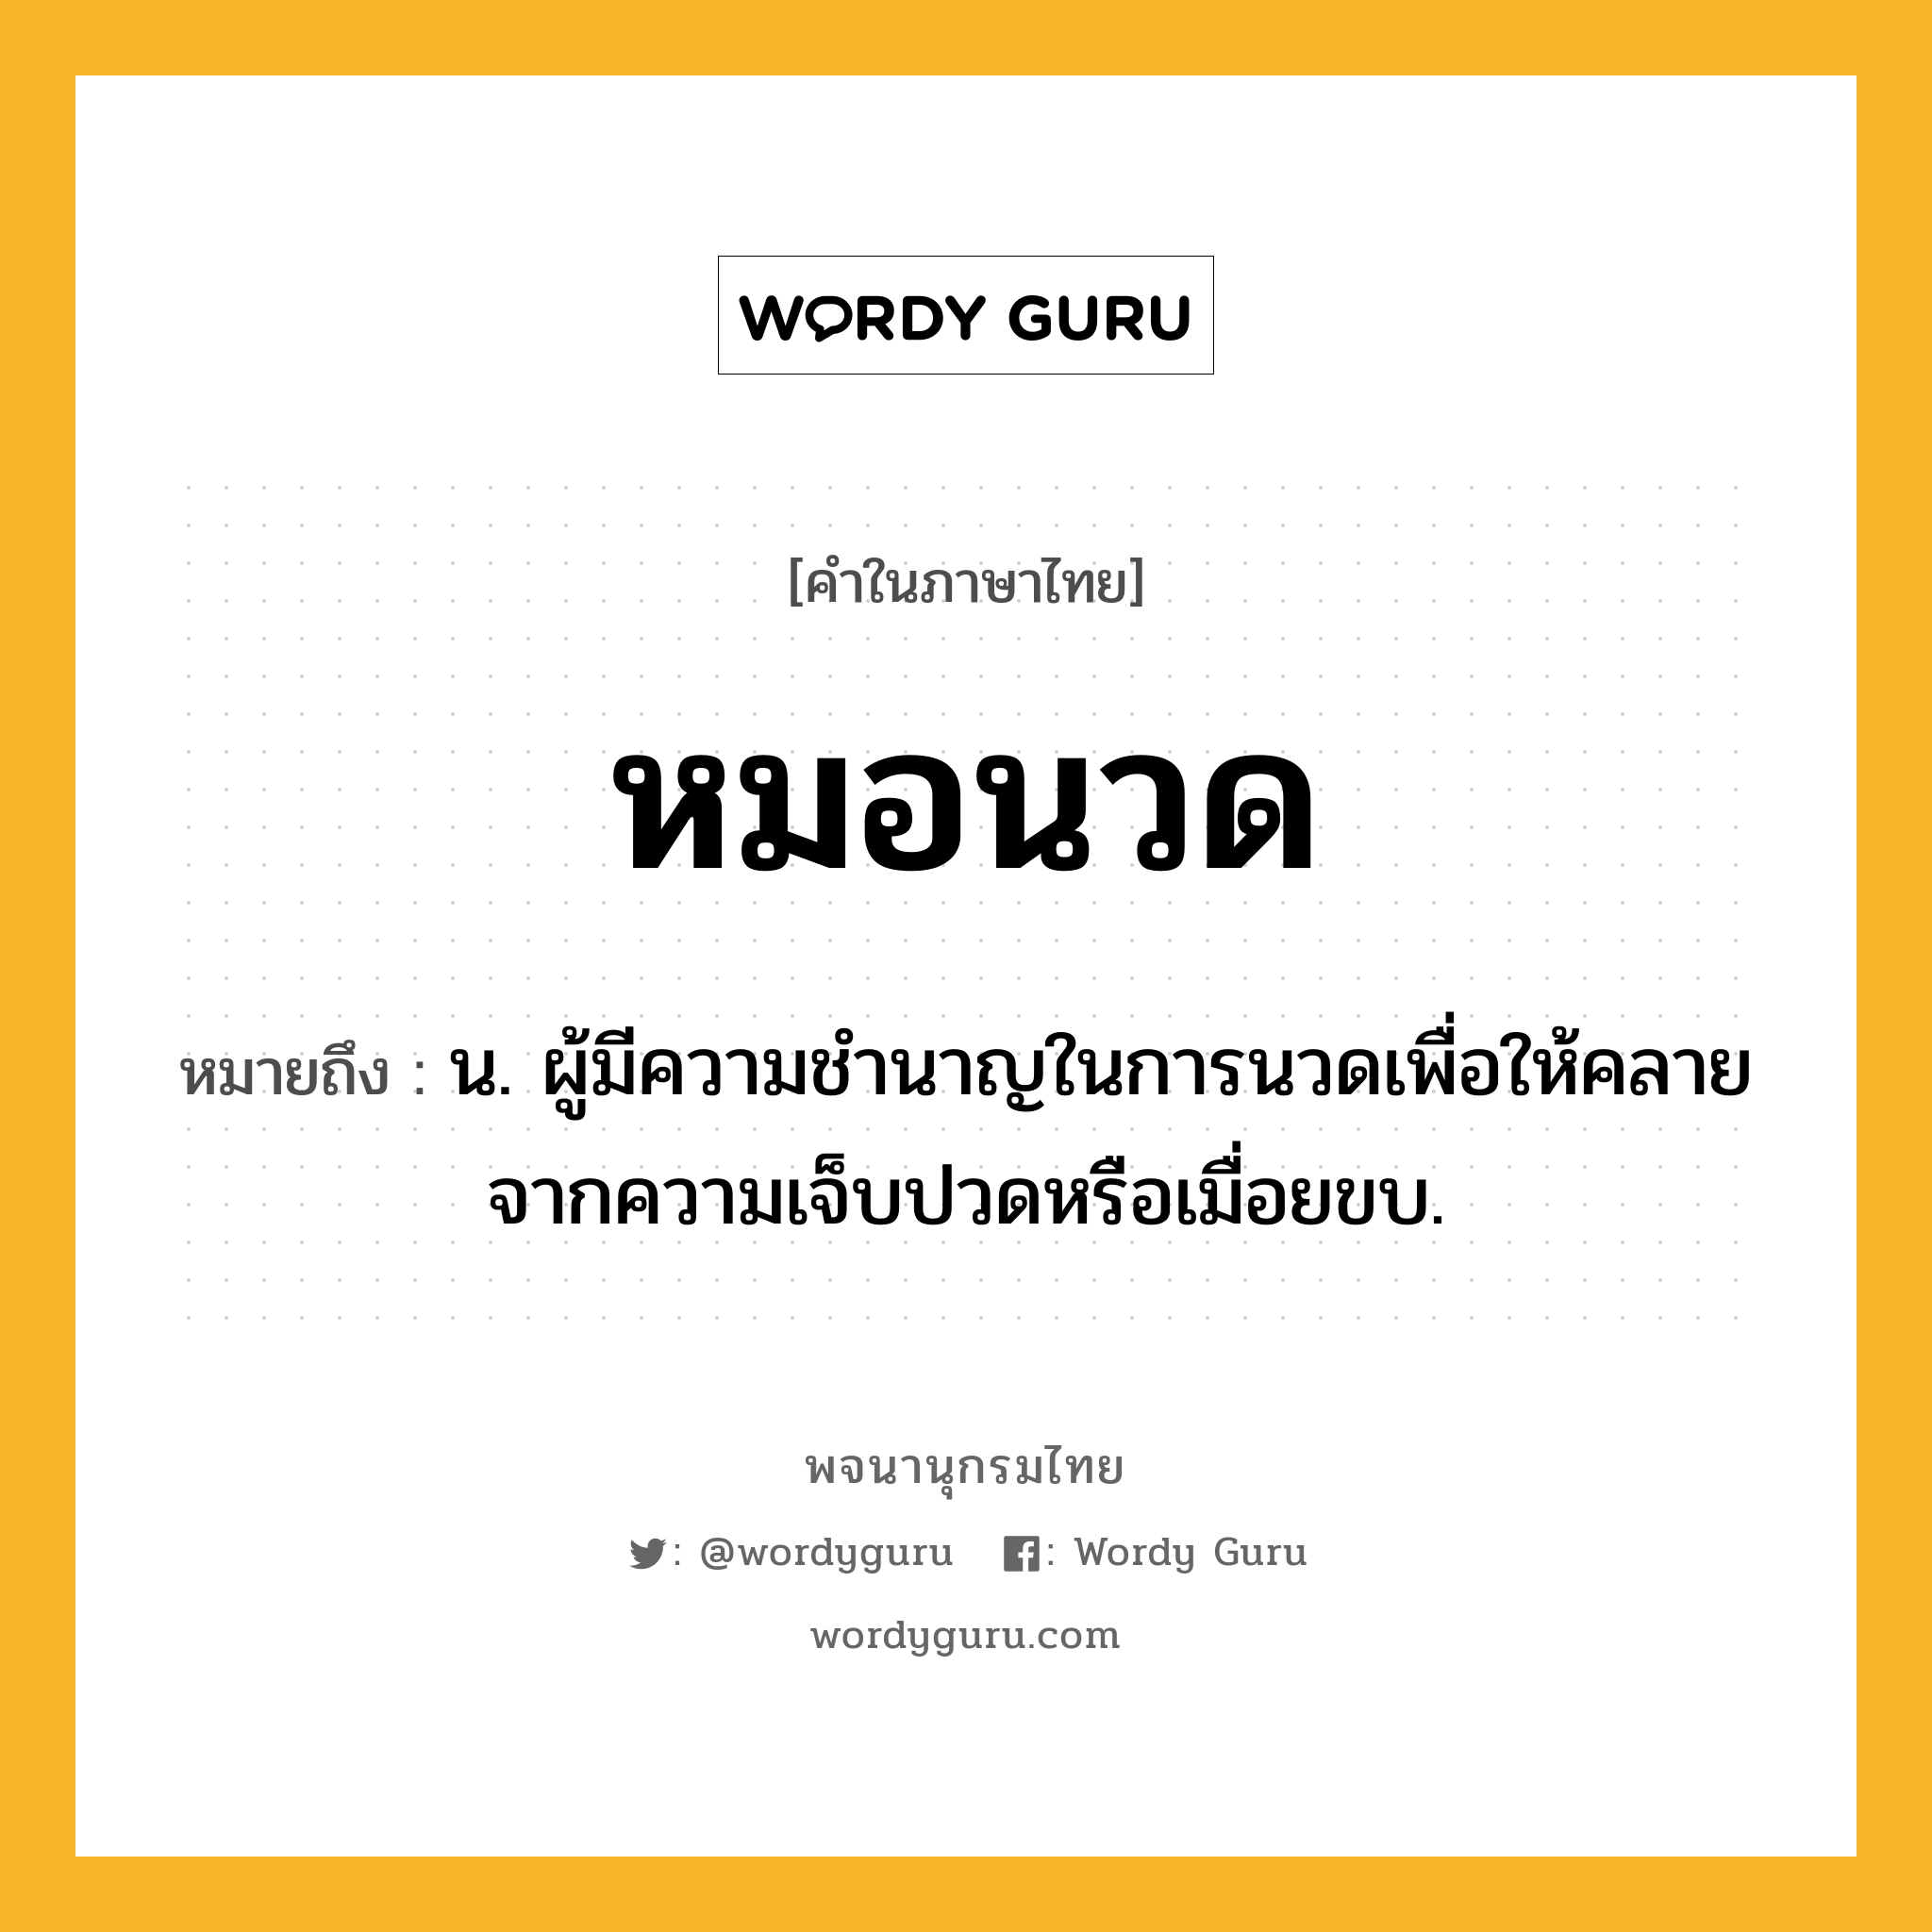 หมอนวด หมายถึงอะไร?, คำในภาษาไทย หมอนวด หมายถึง น. ผู้มีความชำนาญในการนวดเพื่อให้คลายจากความเจ็บปวดหรือเมื่อยขบ.